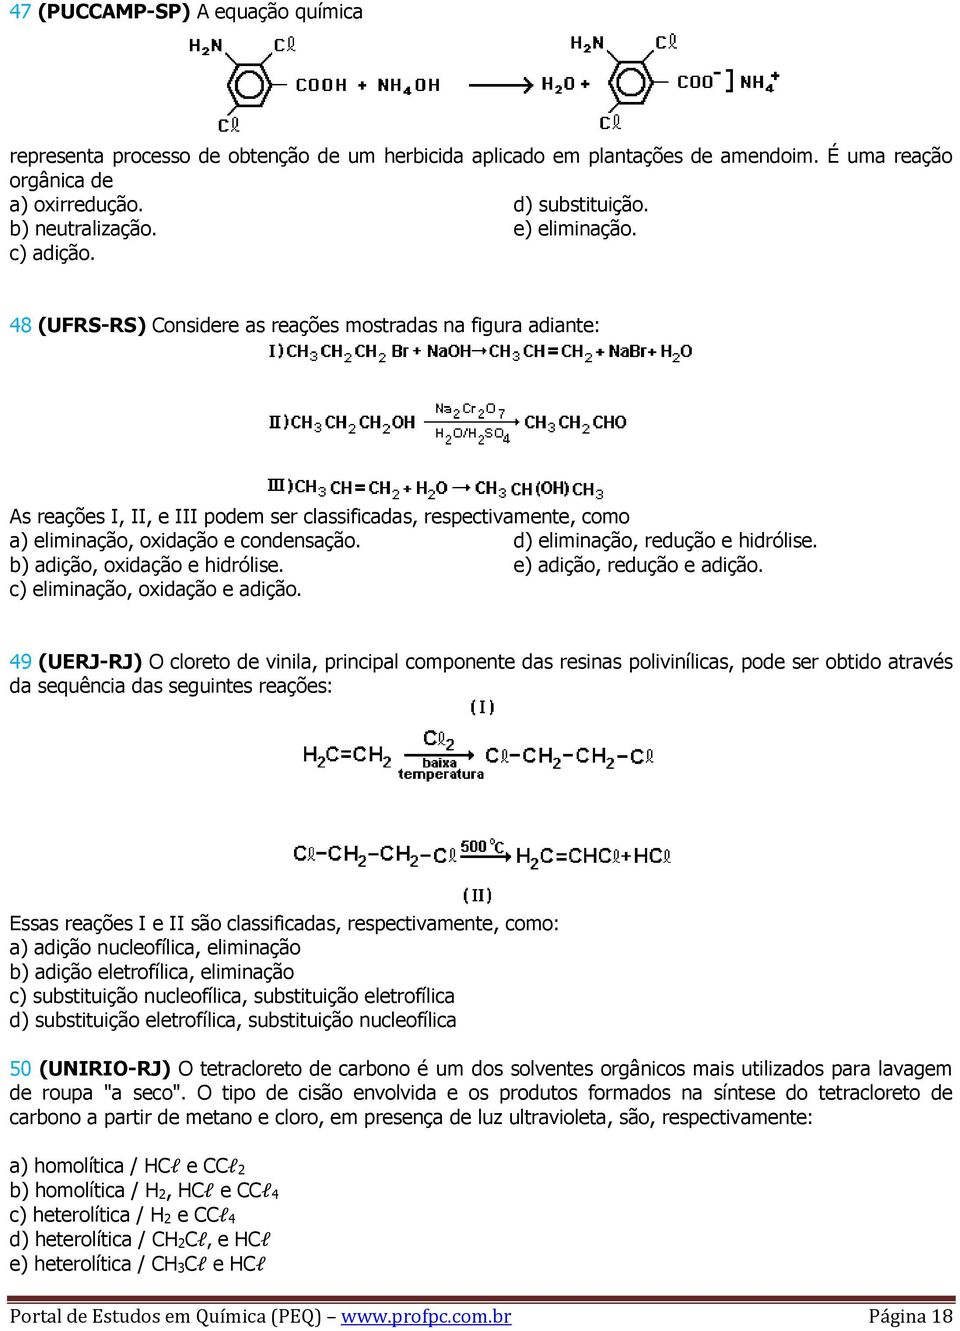 d) eliminação, redução e hidrólise. b) adição, oxidação e hidrólise. e) adição, redução e adição. c) eliminação, oxidação e adição.